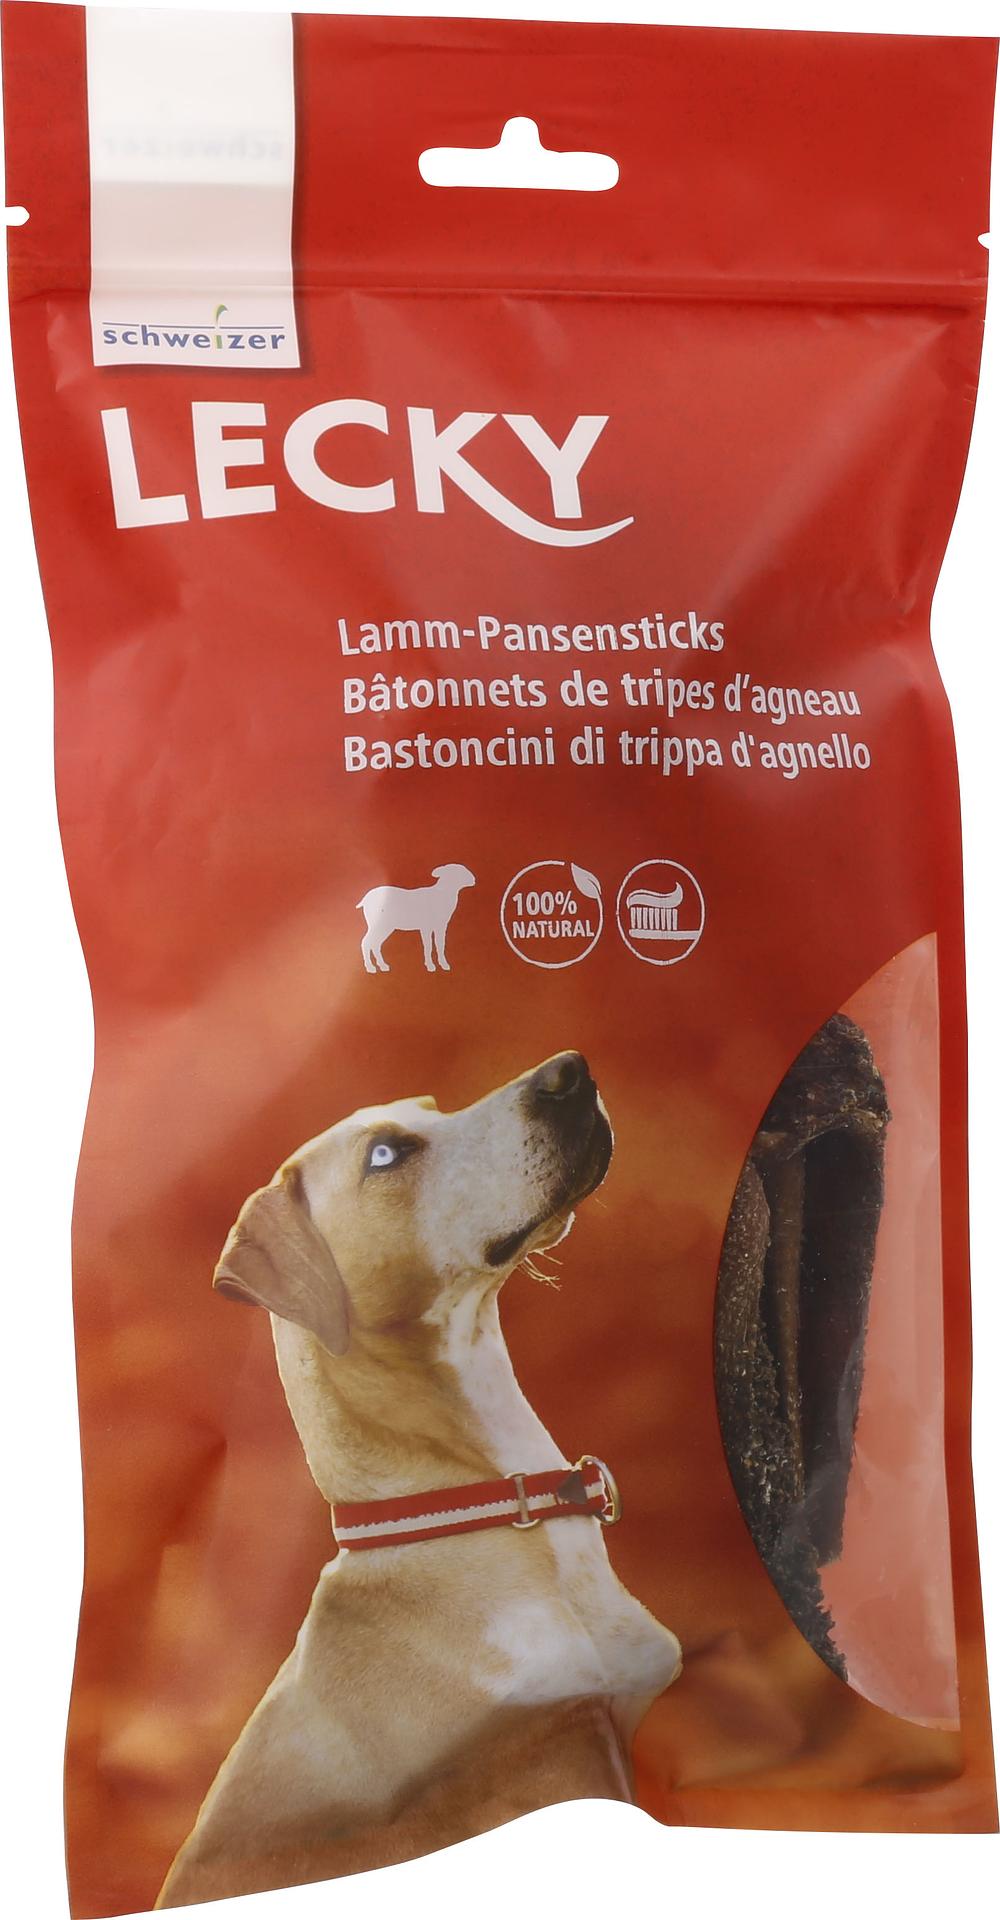 Lecky Lamm-Pansensticks